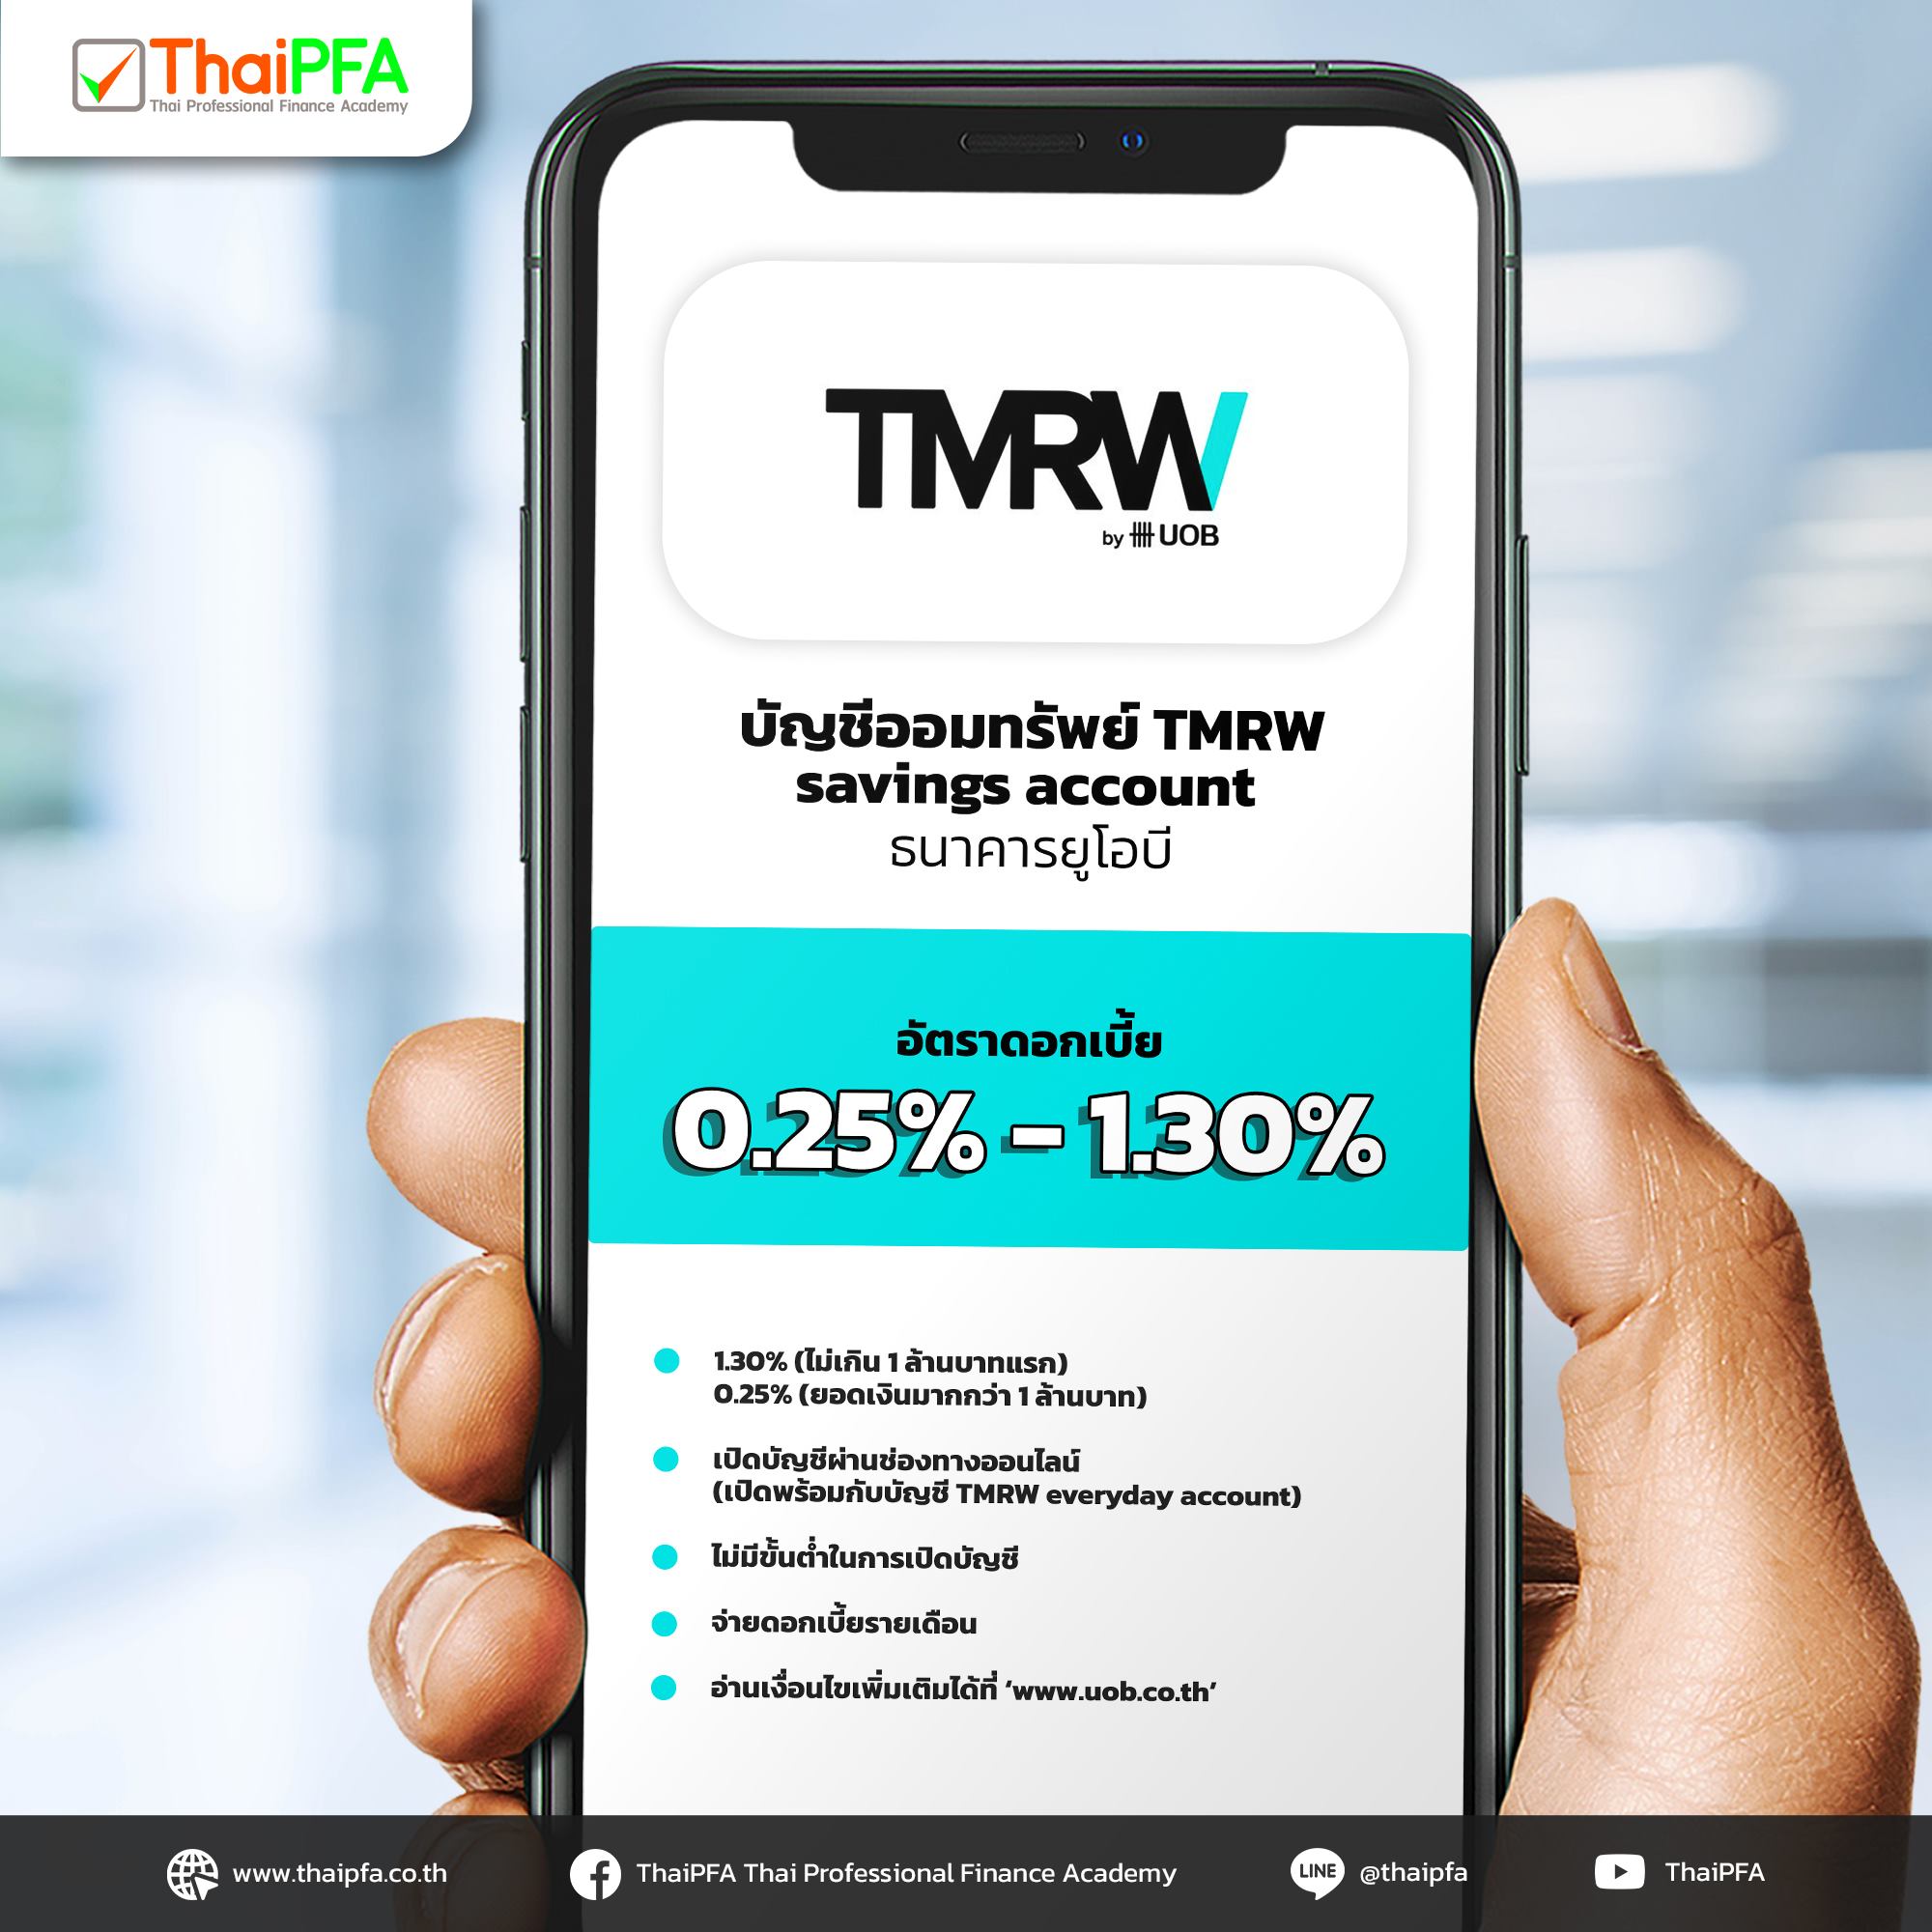 บัญชีออมทรัพย์ TMRW savings account ของธนาคารยูโอบี